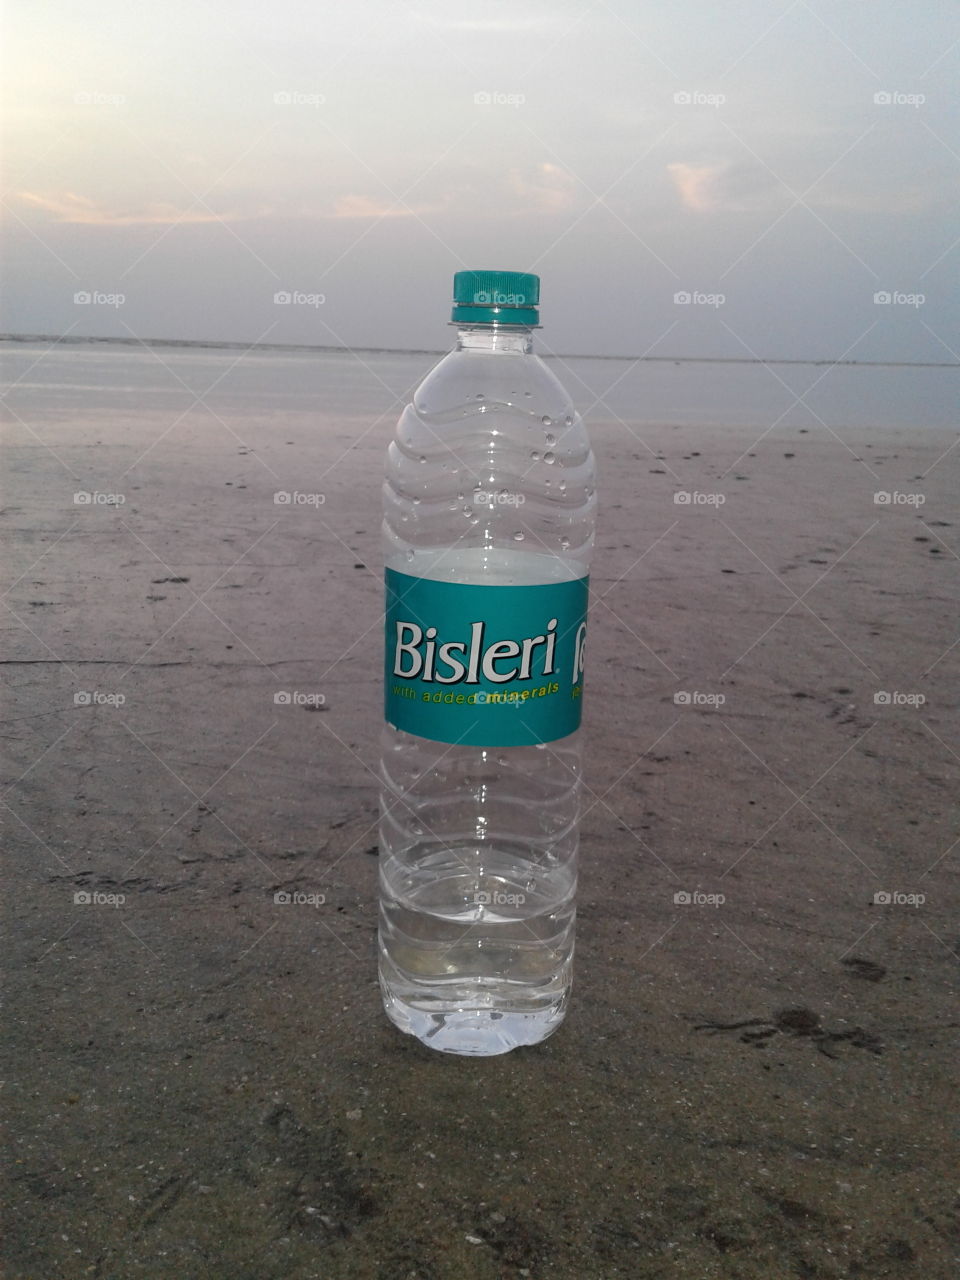 brisleri water